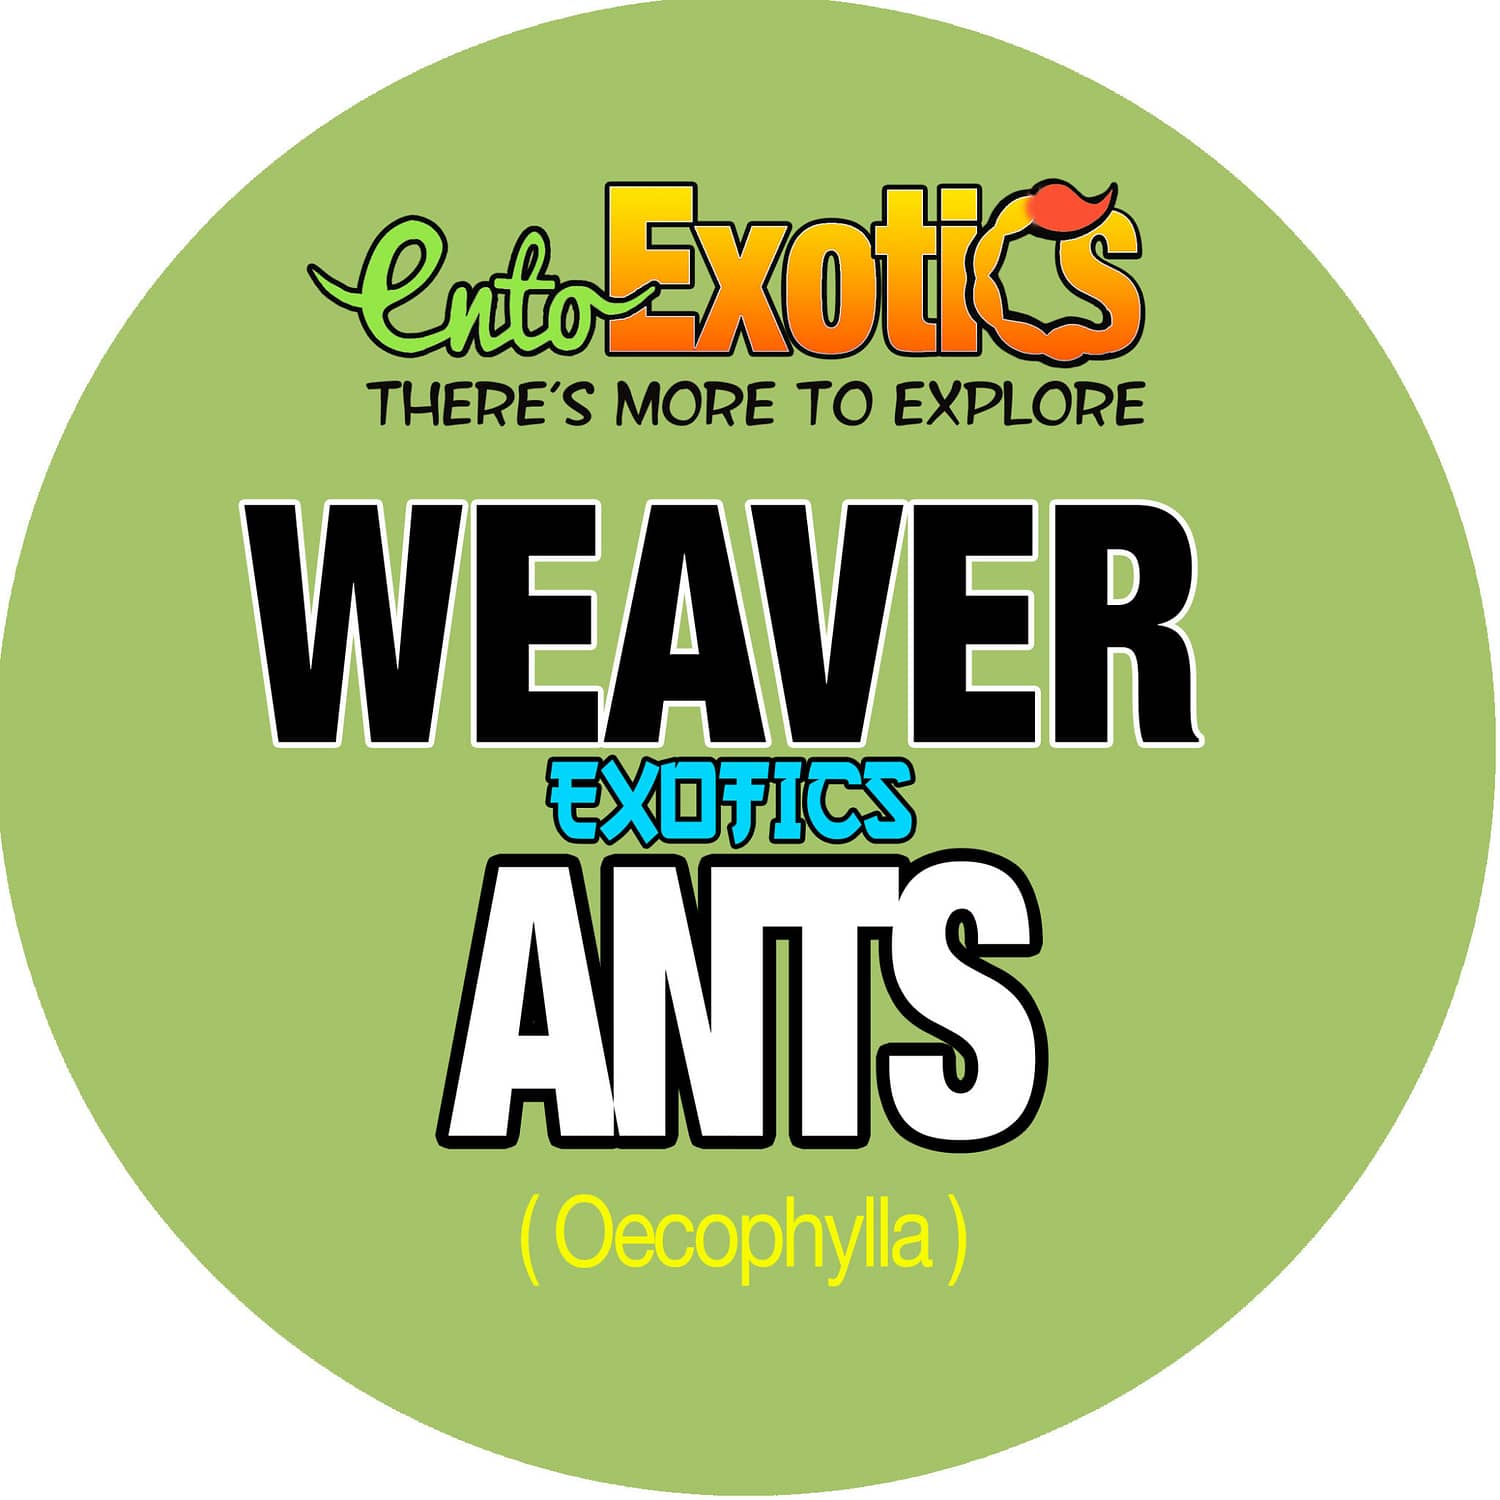 Bulk Weaver Ants